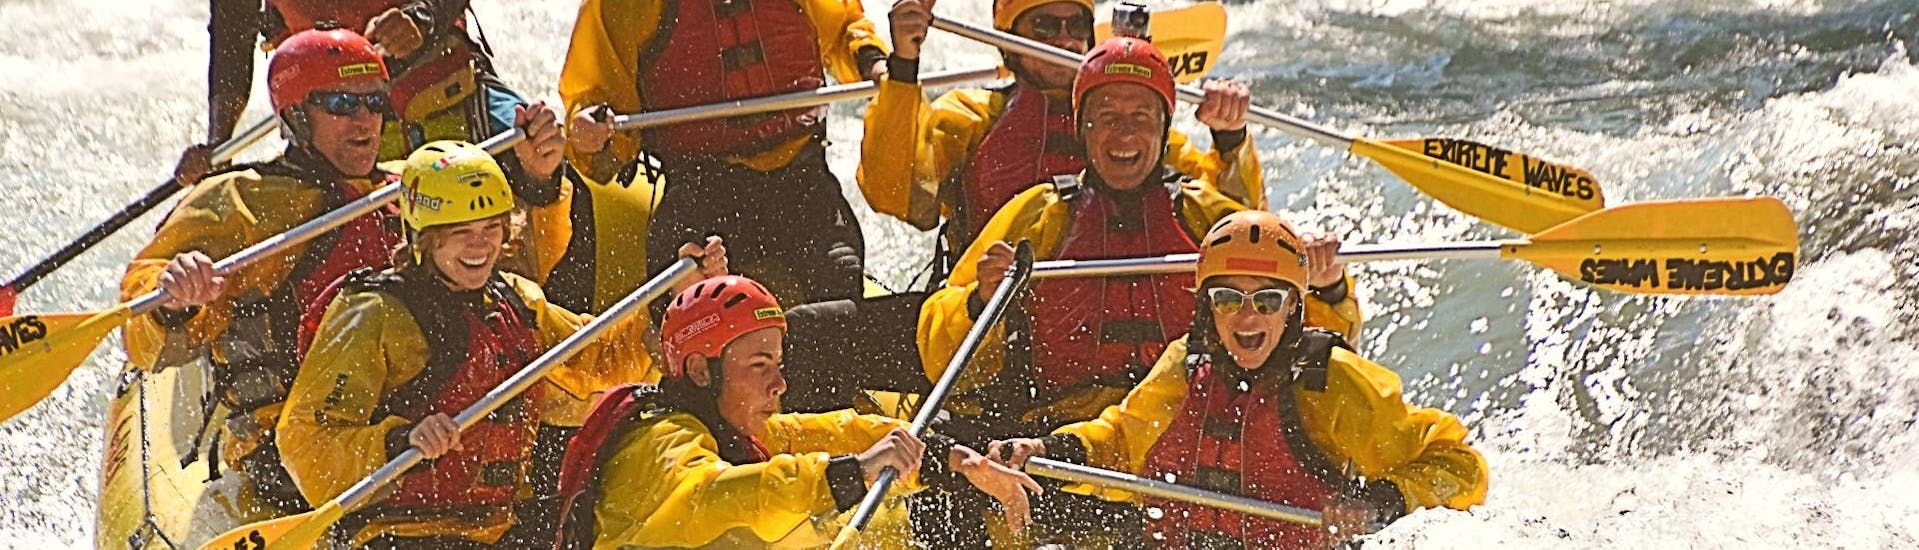 Deelnemers ervaren zeer veel adrenaline tijdens het raften op de Noce rivier in Val Di Sole met Extreme Waves.